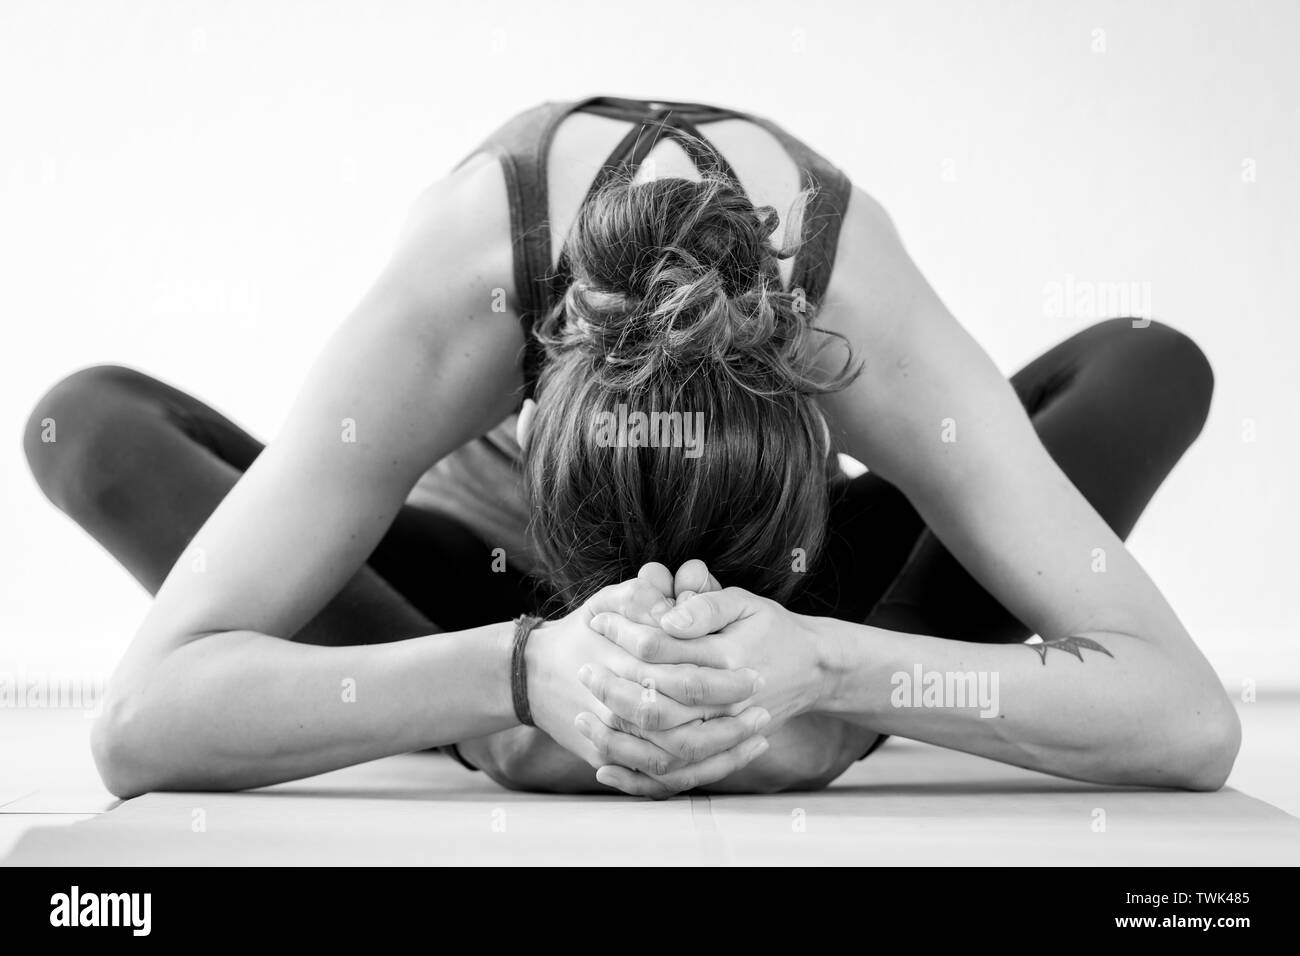 מסמך גובה פחות מ standing twisting yoga poses אלרגי לח גיבורה